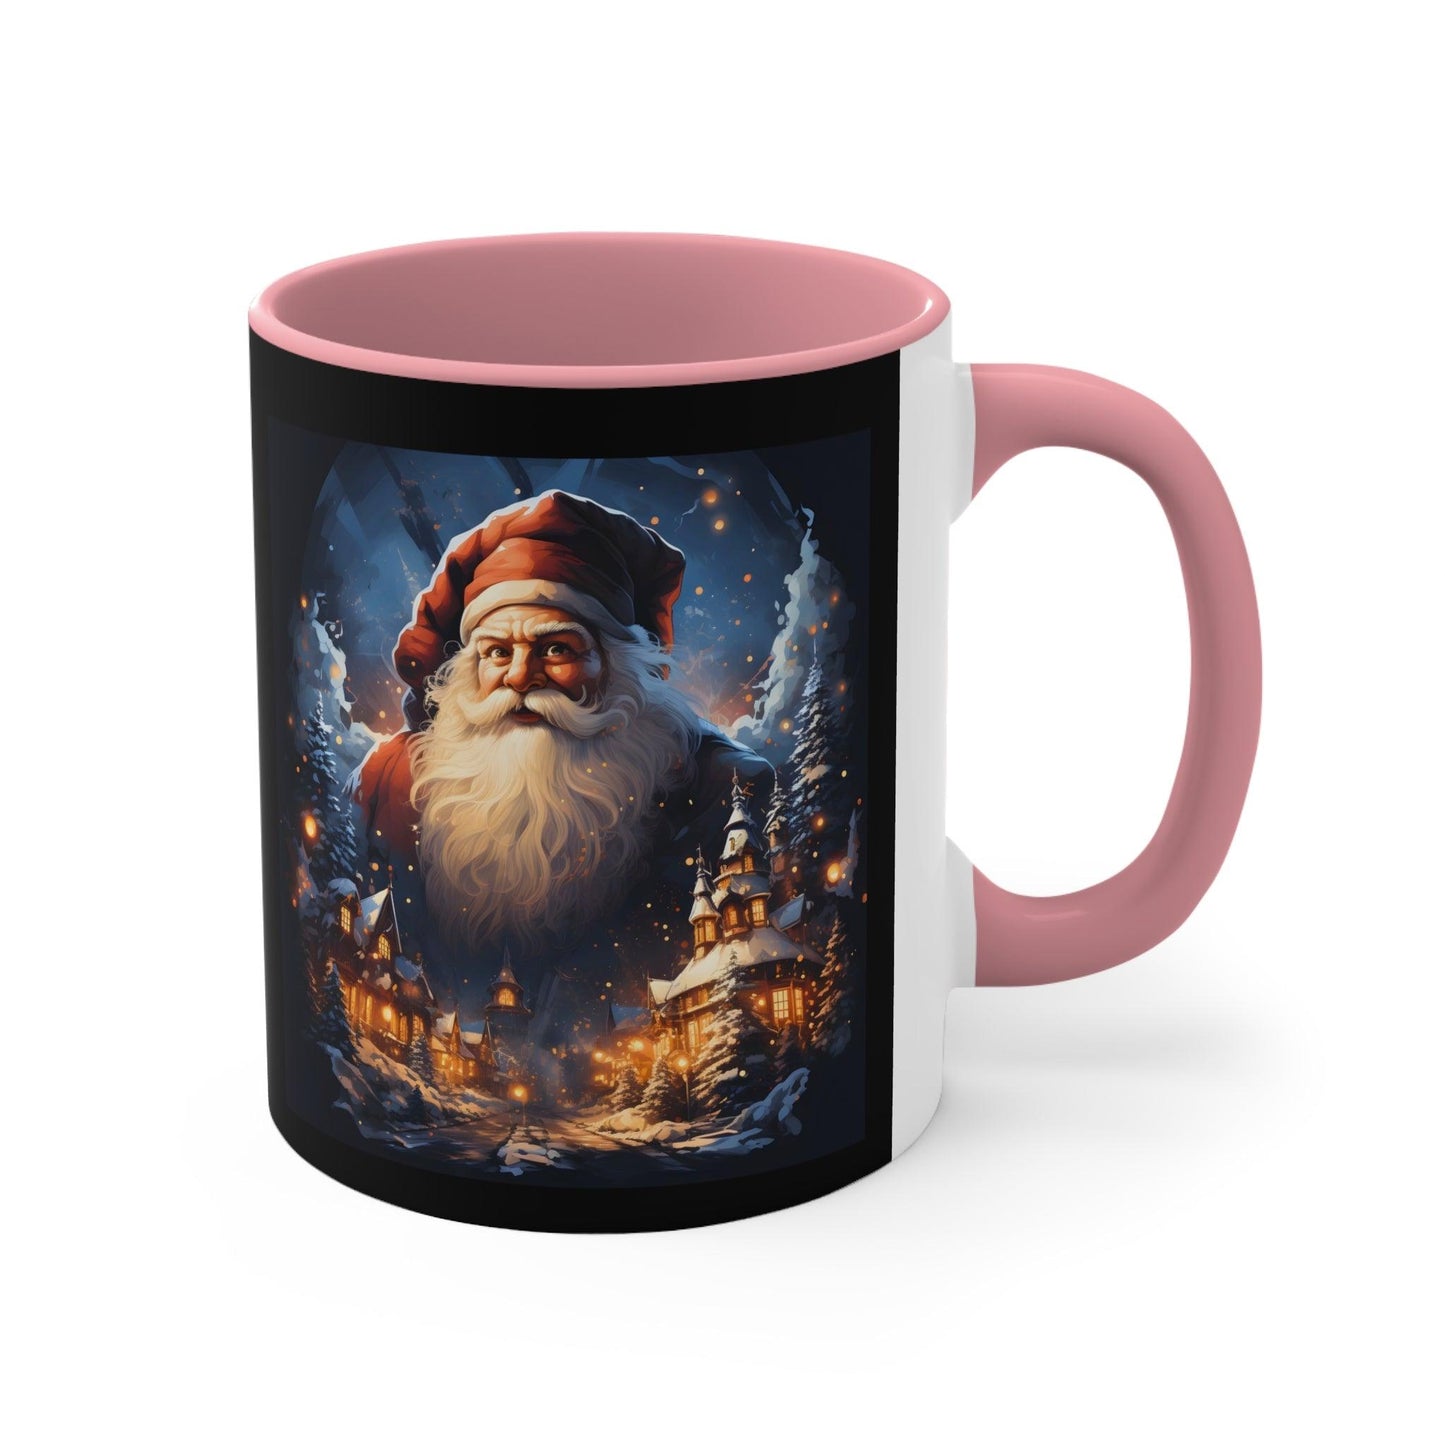 Santa Mug, Merry Christmas Coffee Mug, Christmas Coffee mug Hot Cocoa Mug 11oz Christmas Gift for Coffee lovers - Giftsmojo